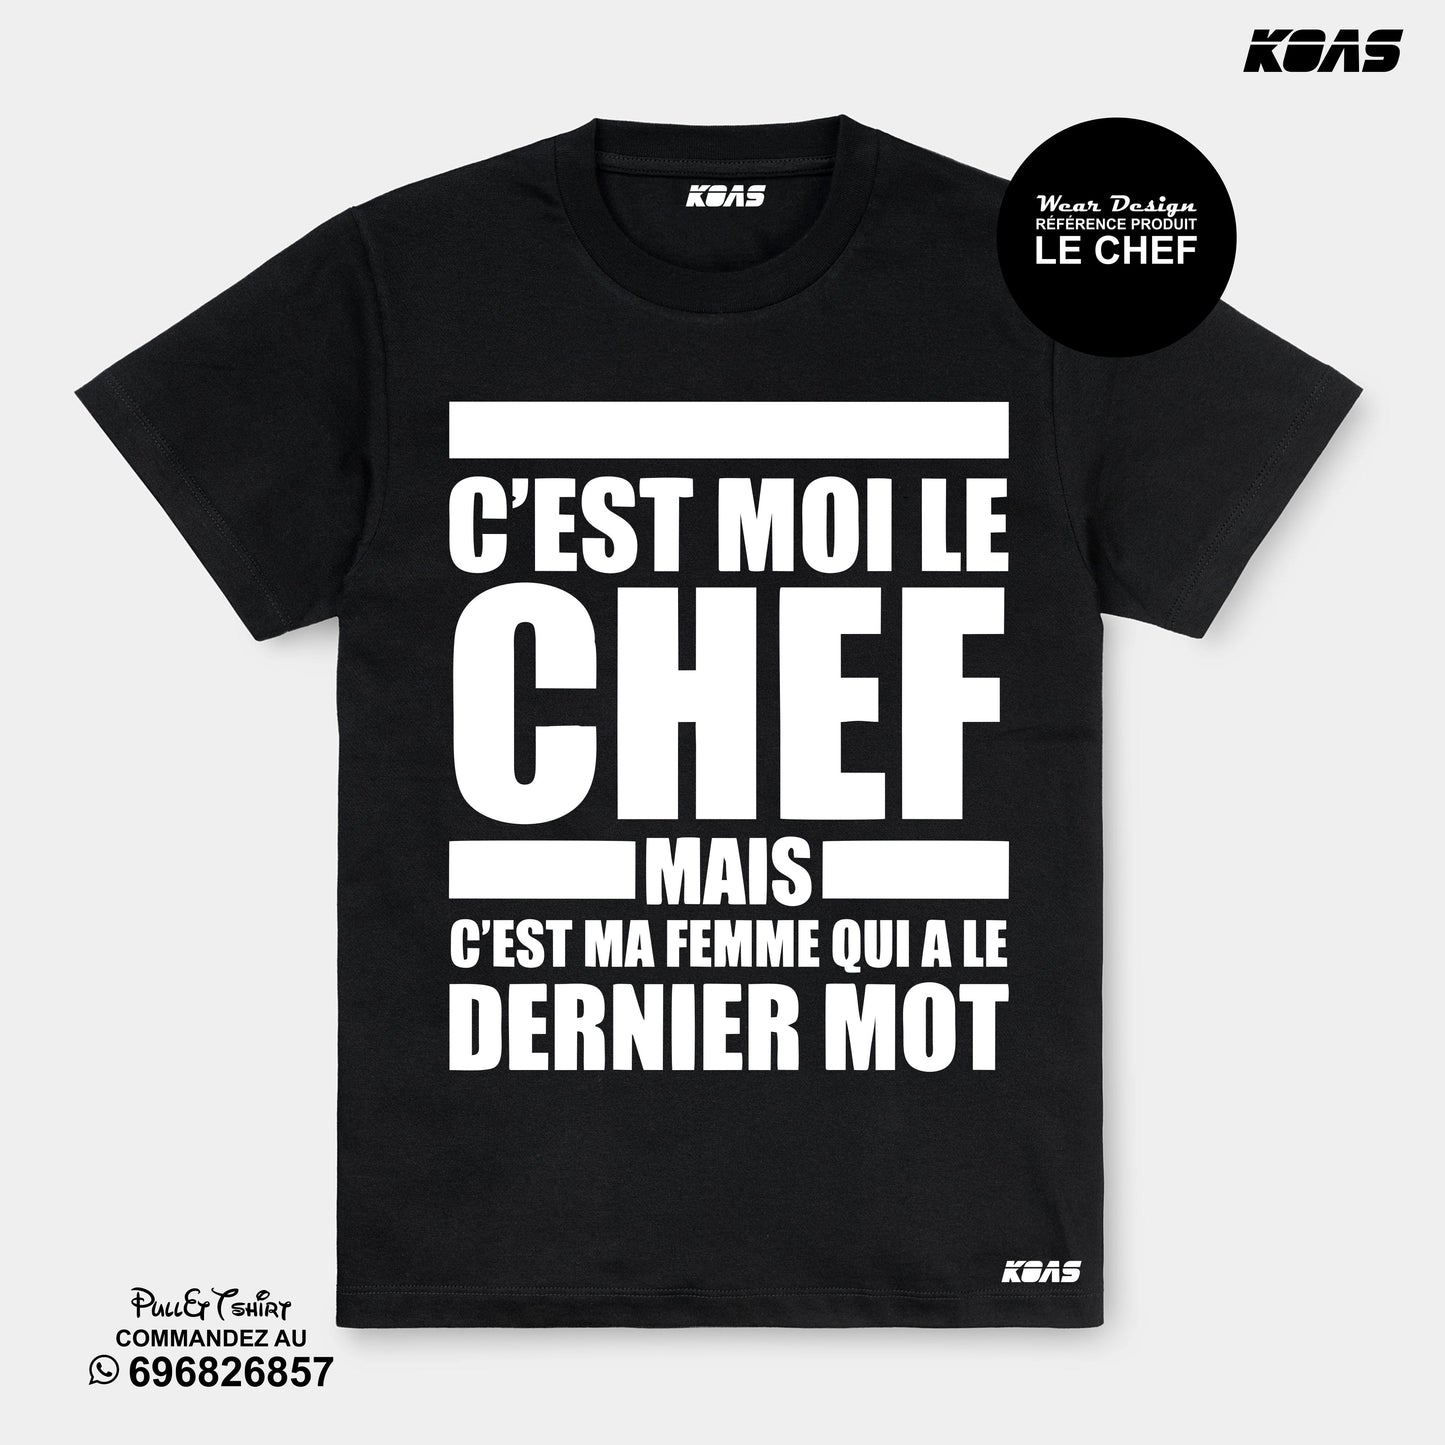 Le chef - Tshirt